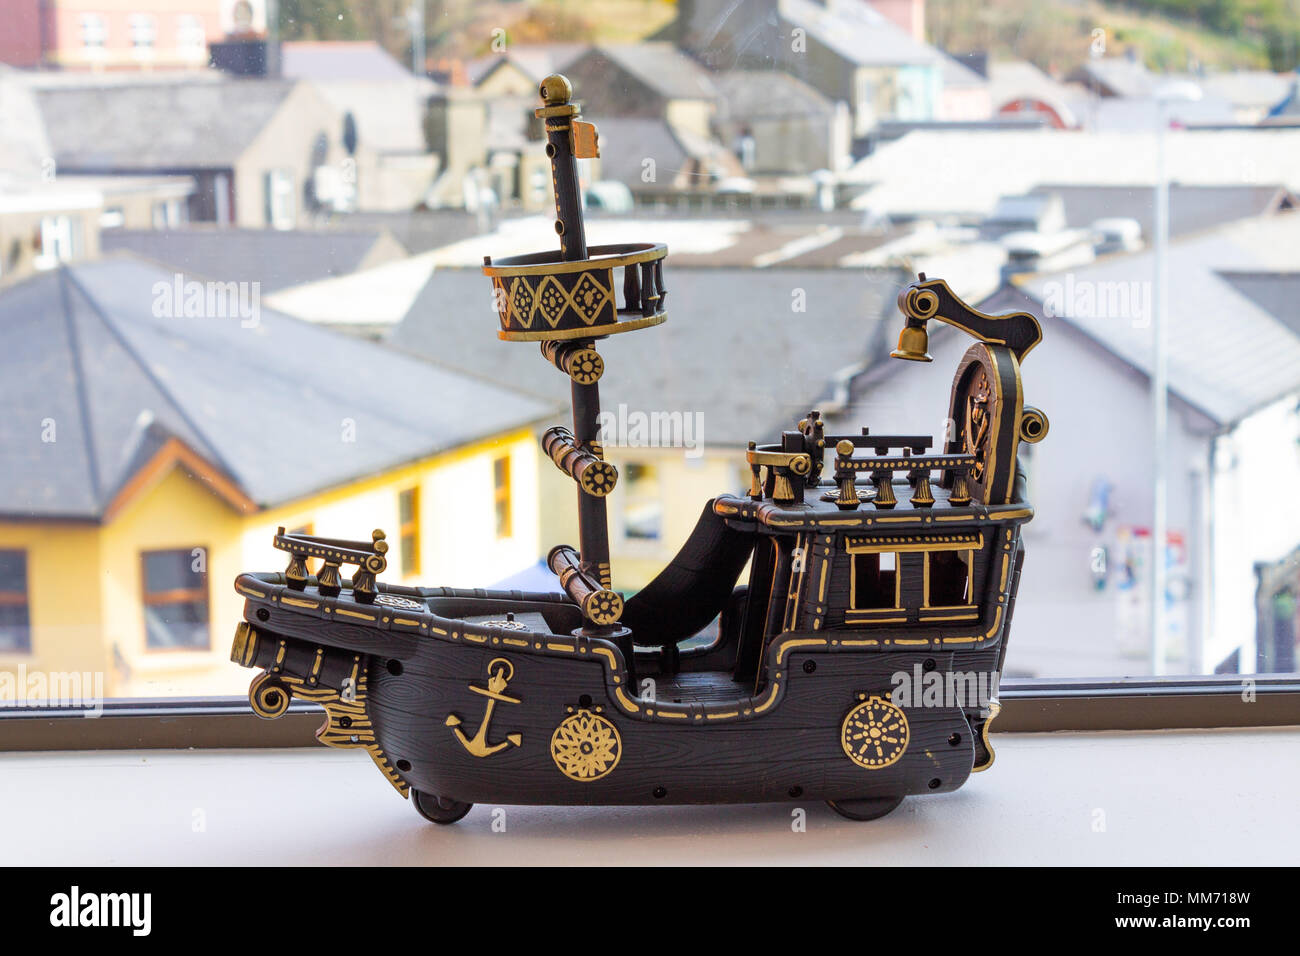 Modello giocattolo di un unico montante verniciato in barca in marrone e oro colori, sul davanzale della finestra come decorazione. Foto Stock